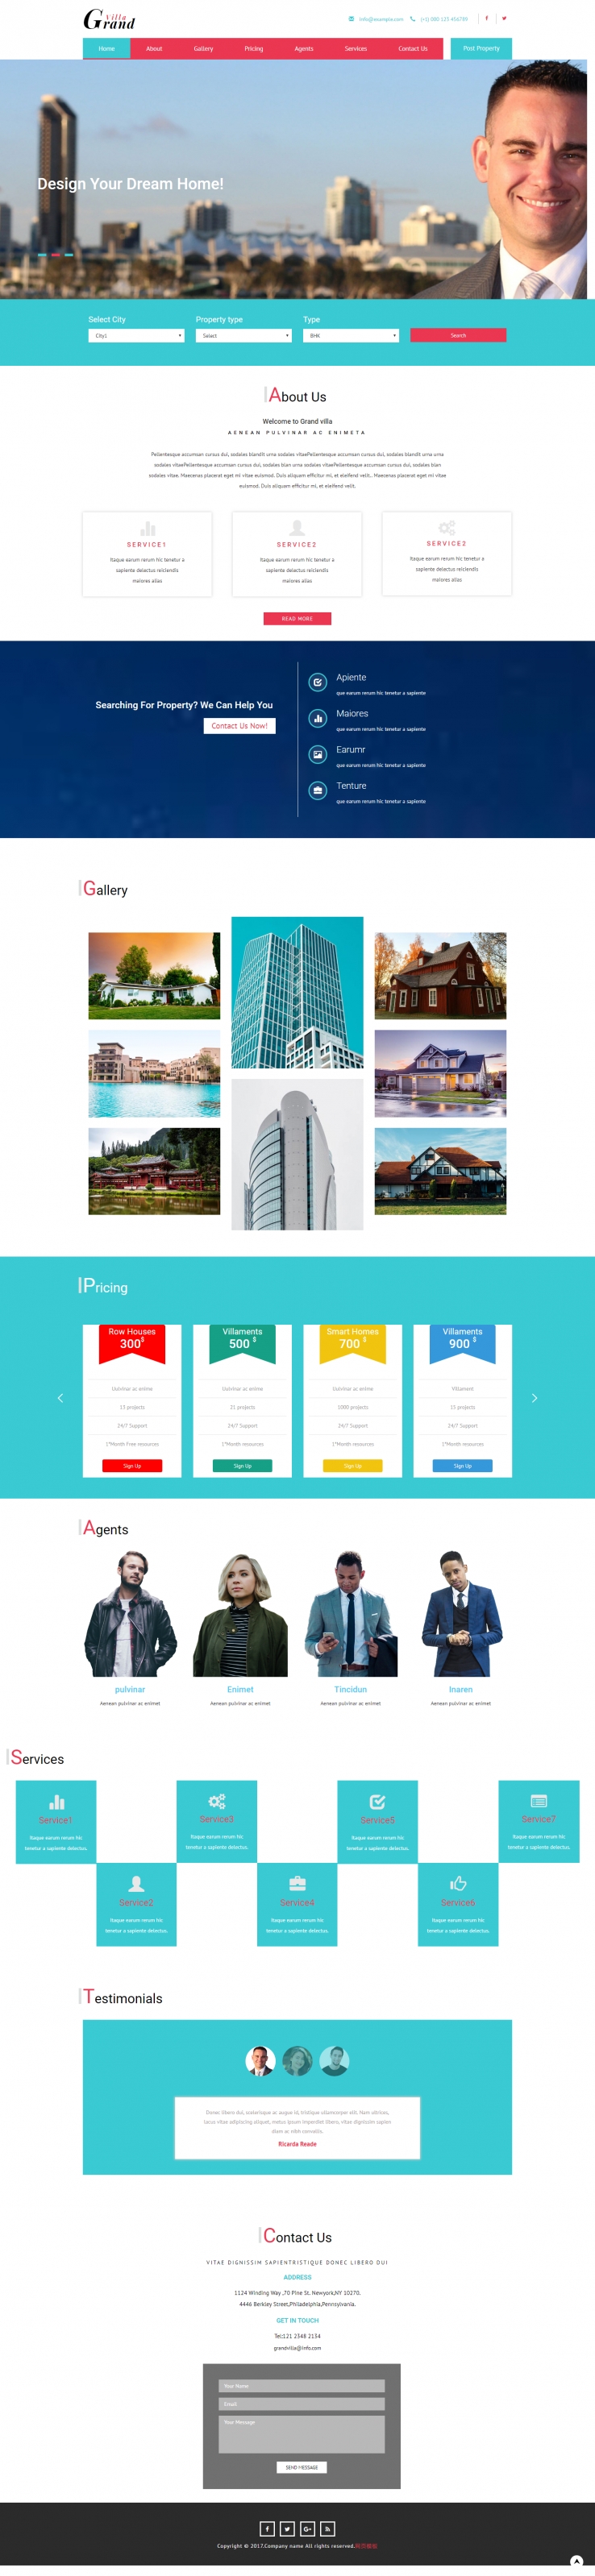 蓝色简洁风格的房地产商业大亨网站模板